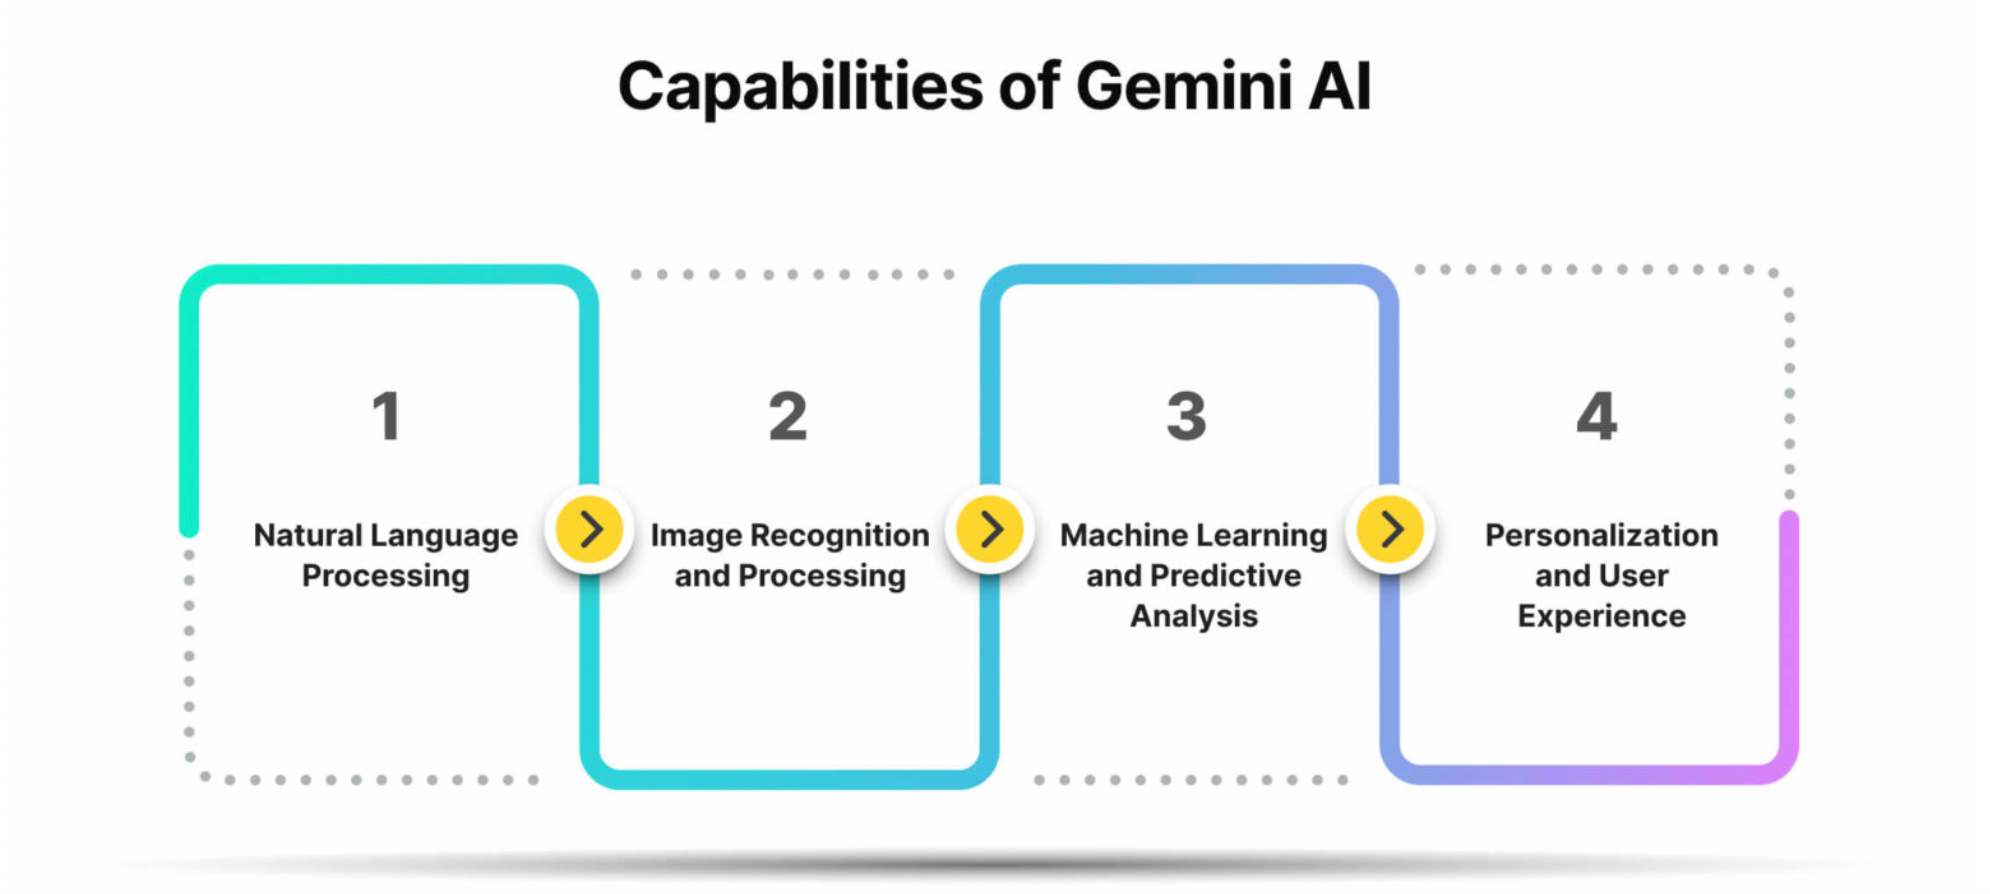 Capabilities of Gemini AI